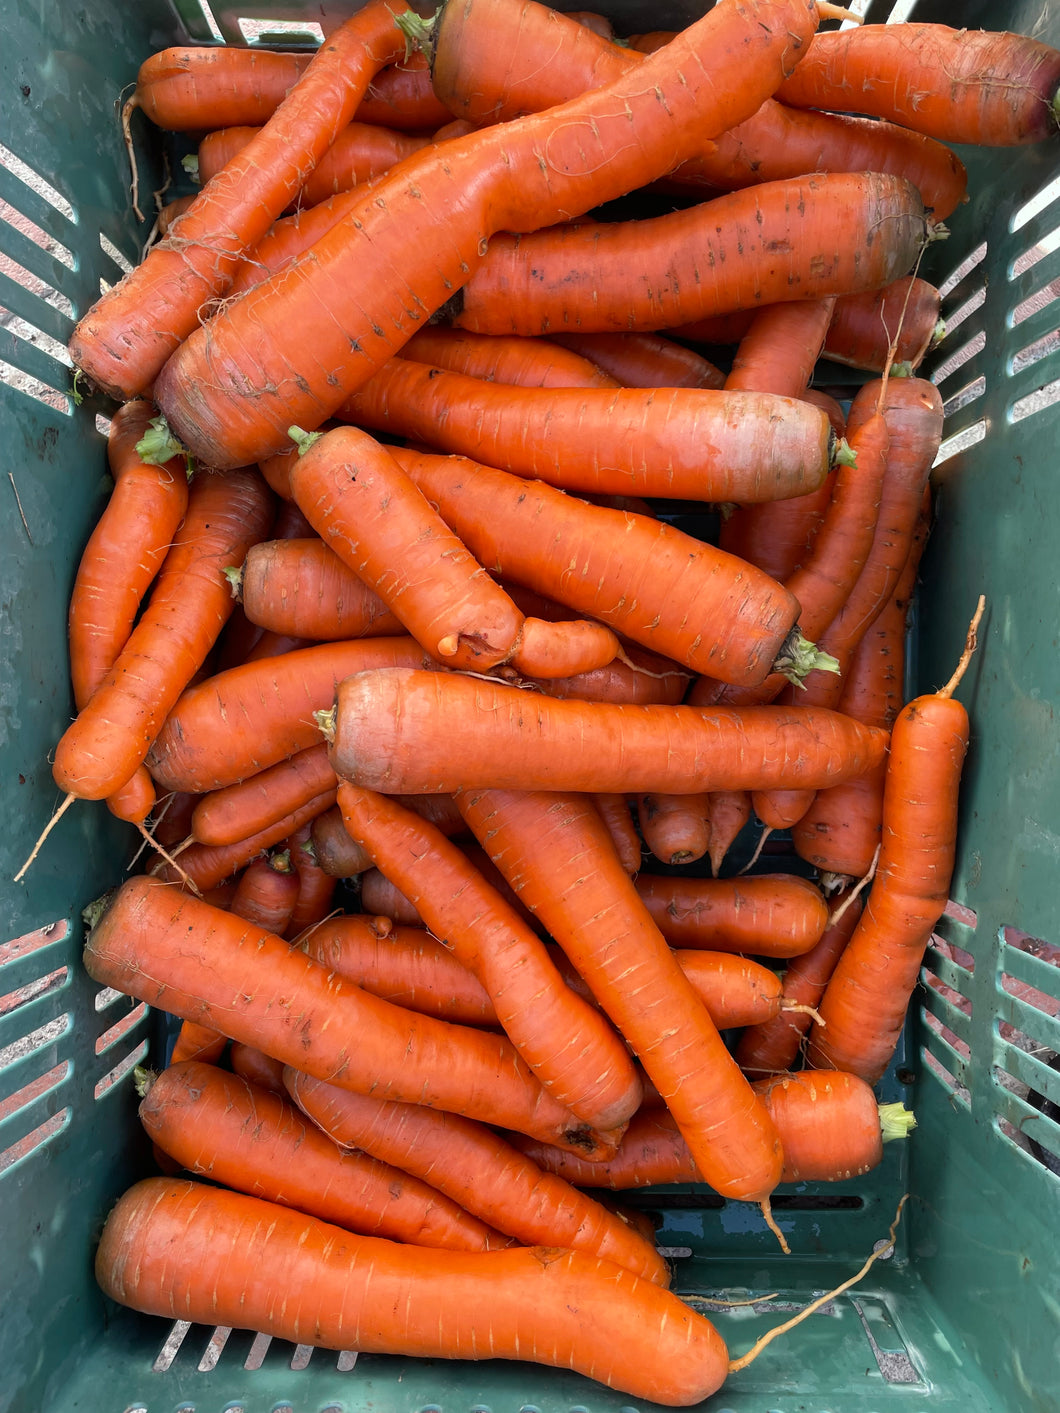 Juicing Carrots